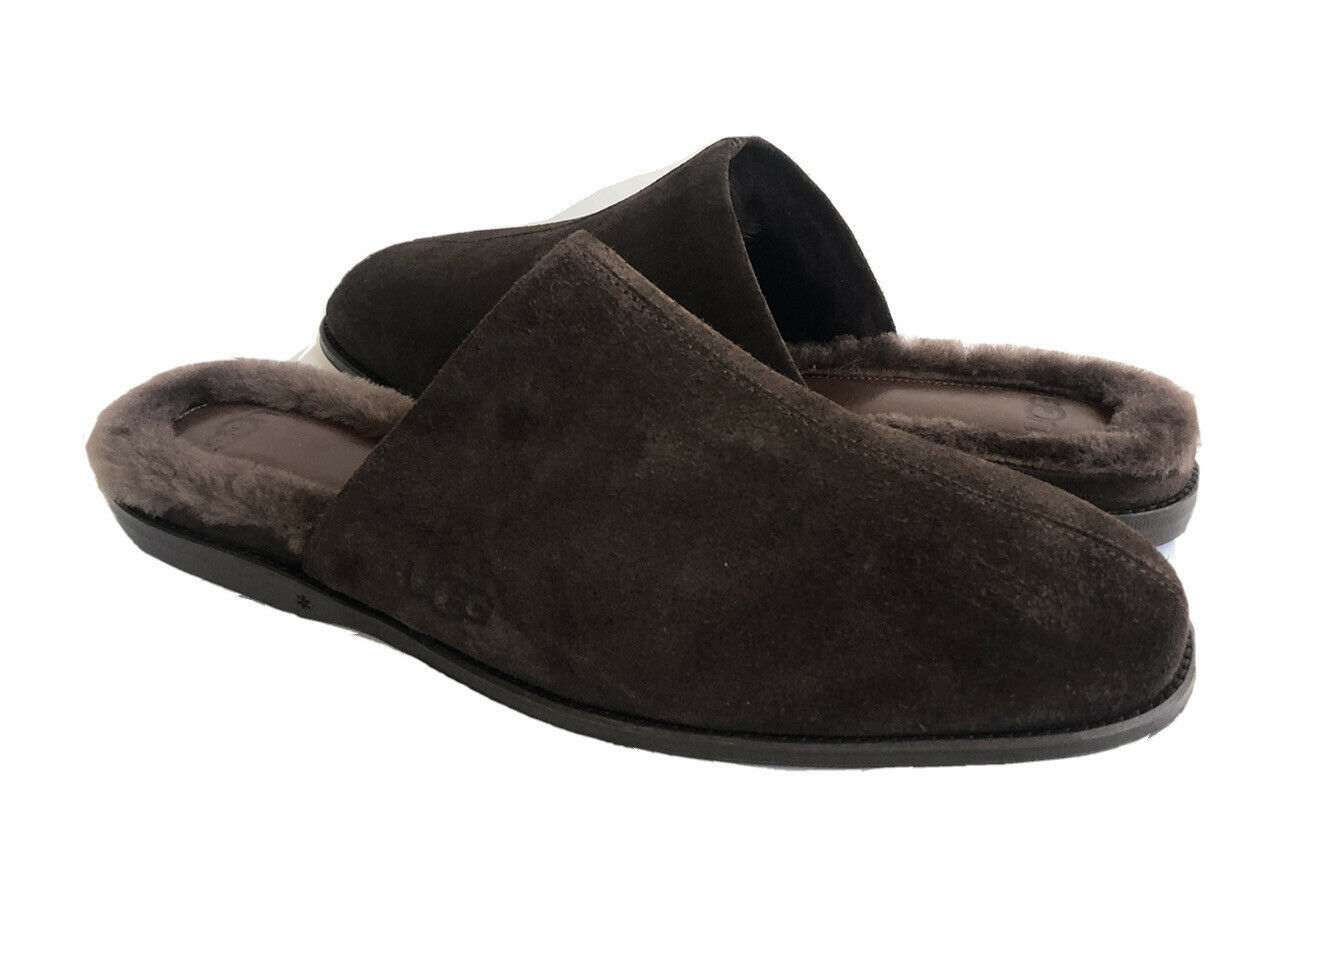 ugg slippers uk size 4